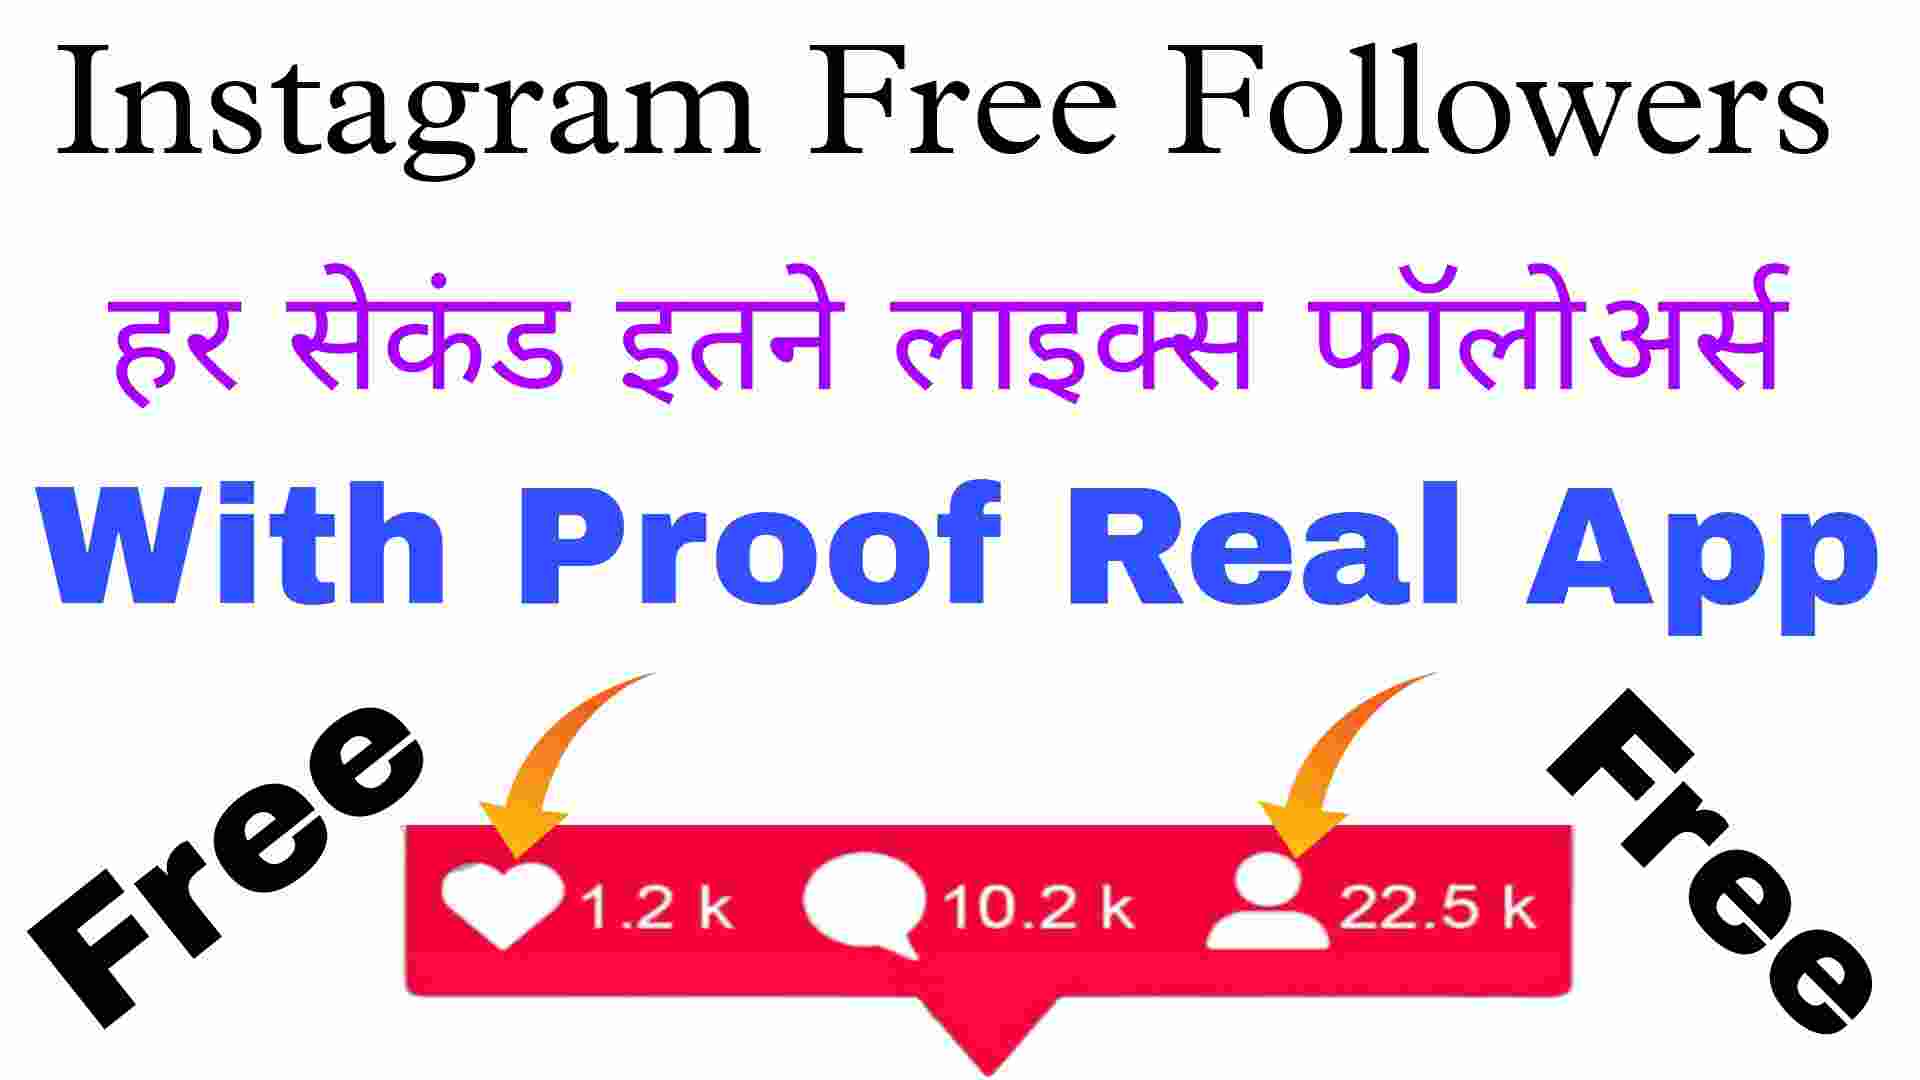 Easy Follower Apk- Download Free Instagram Followers App